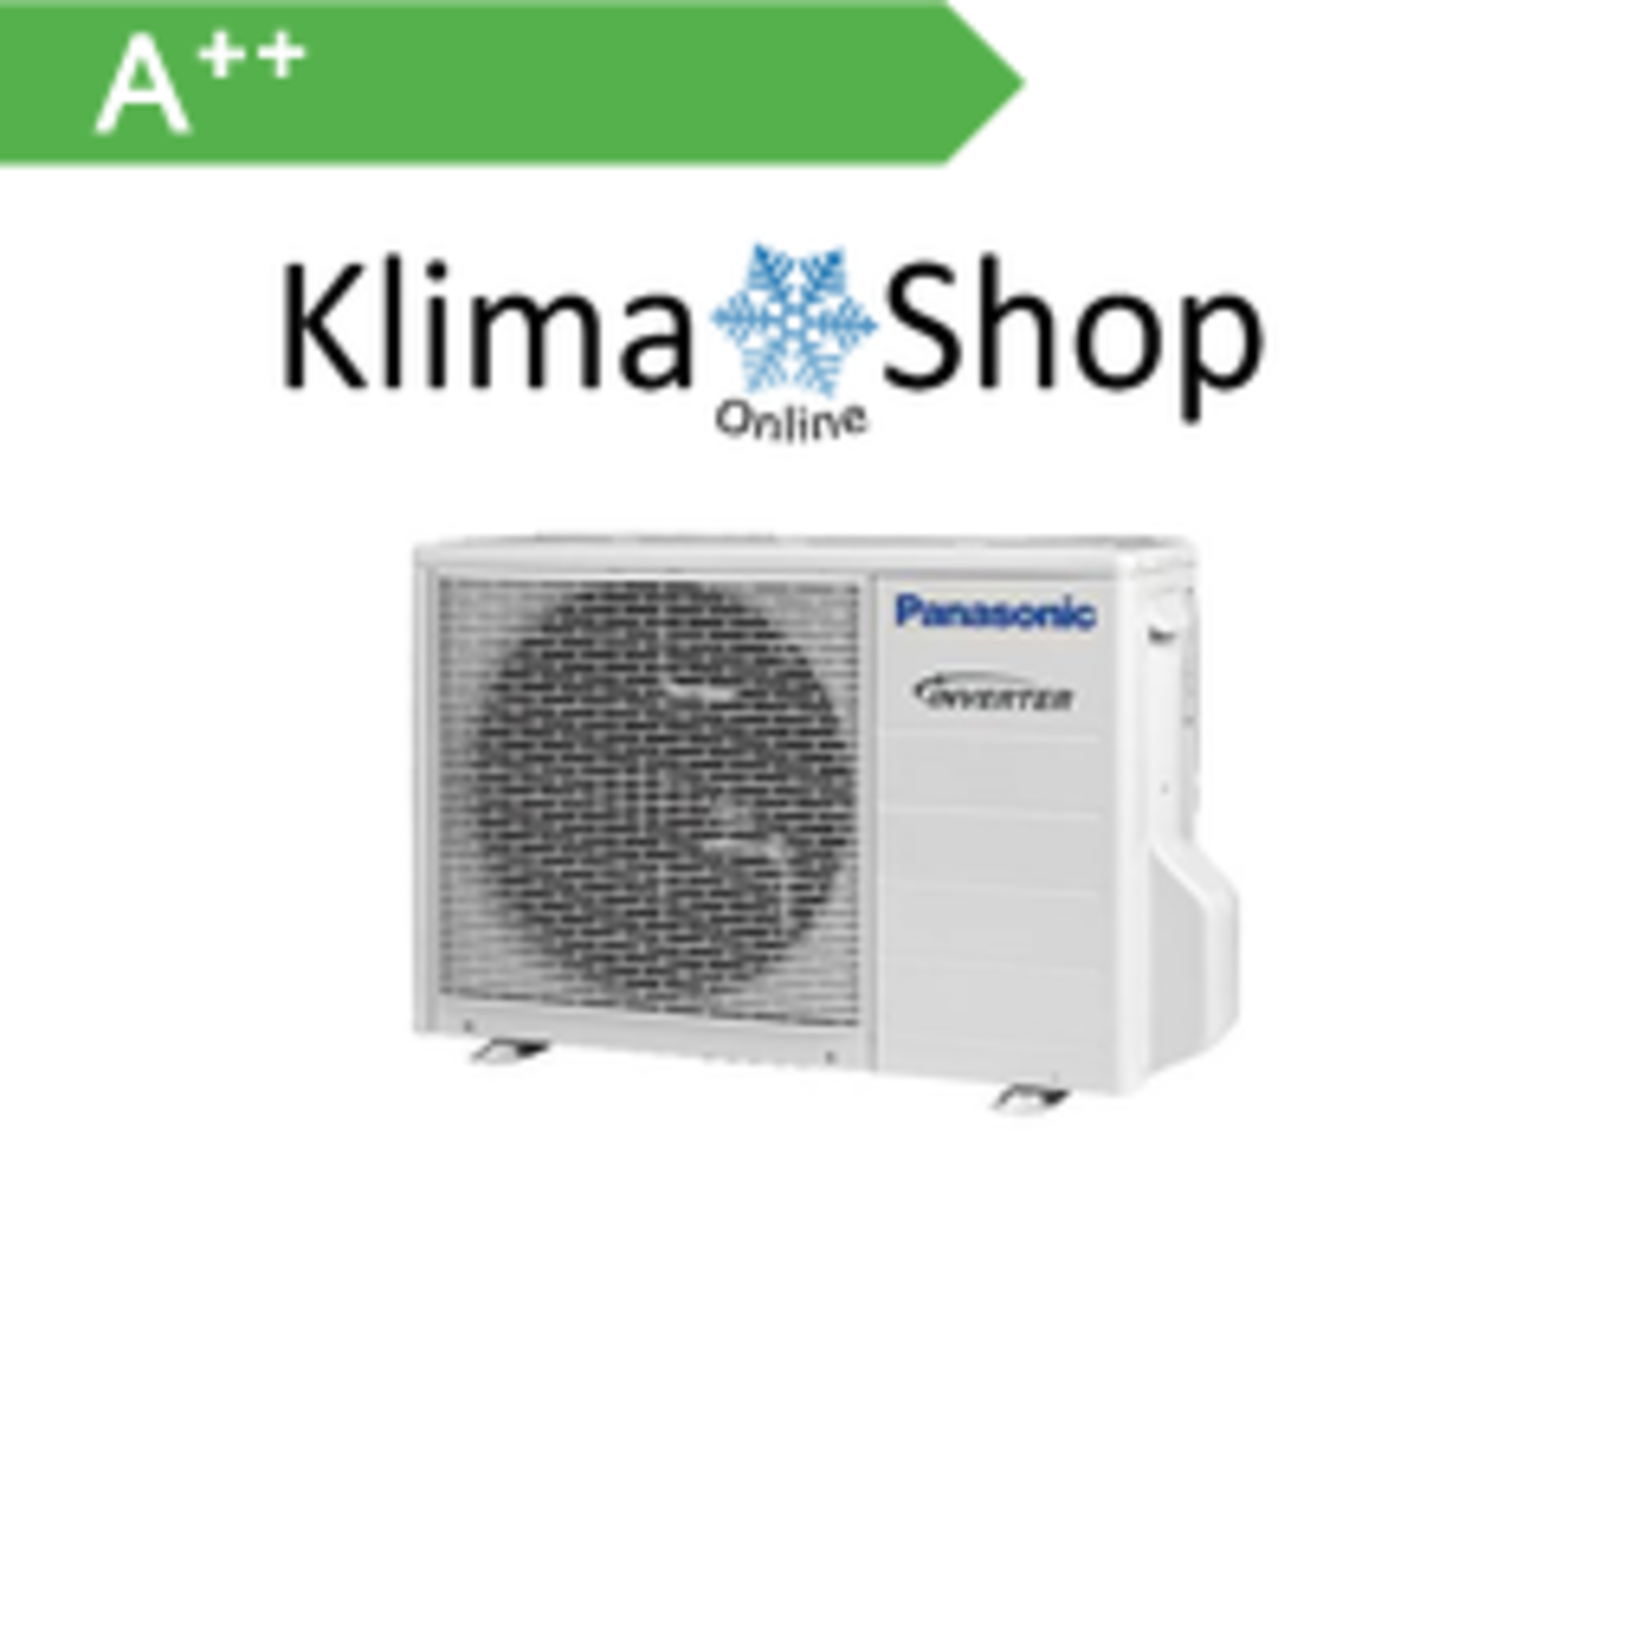 Panasonic Klimaanlage Außengerät  4-Raum Multisplit 6,8 kW